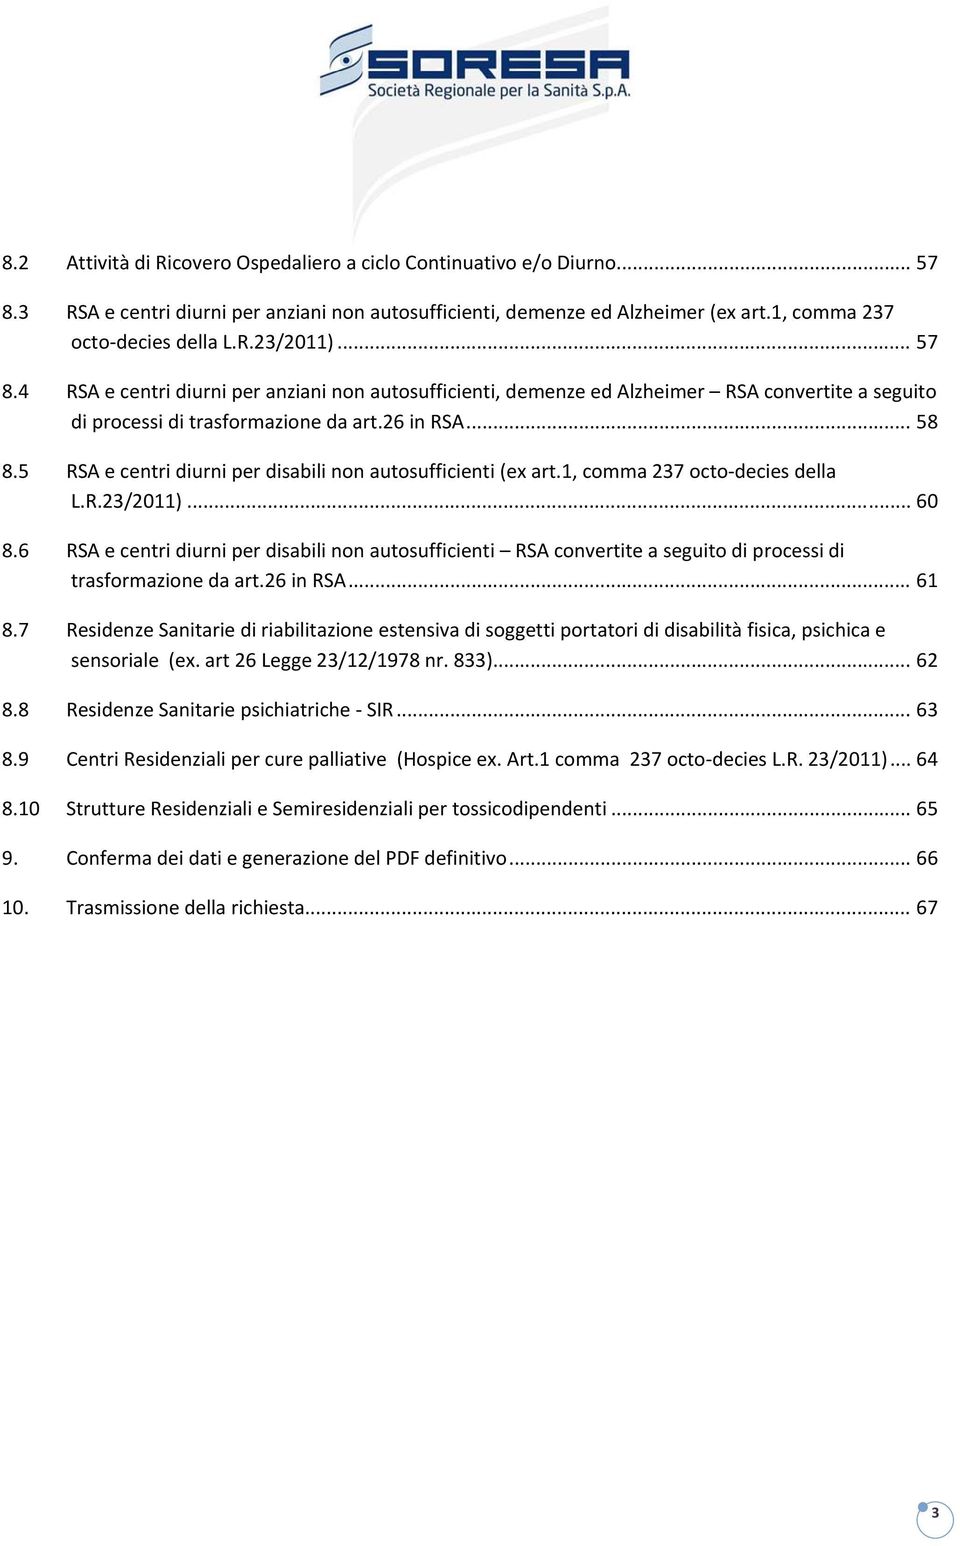 5 RSA e centri diurni per disabili non autosufficienti (ex art.1, comma 237 octo decies della L.R.23/2011)... 60 8.